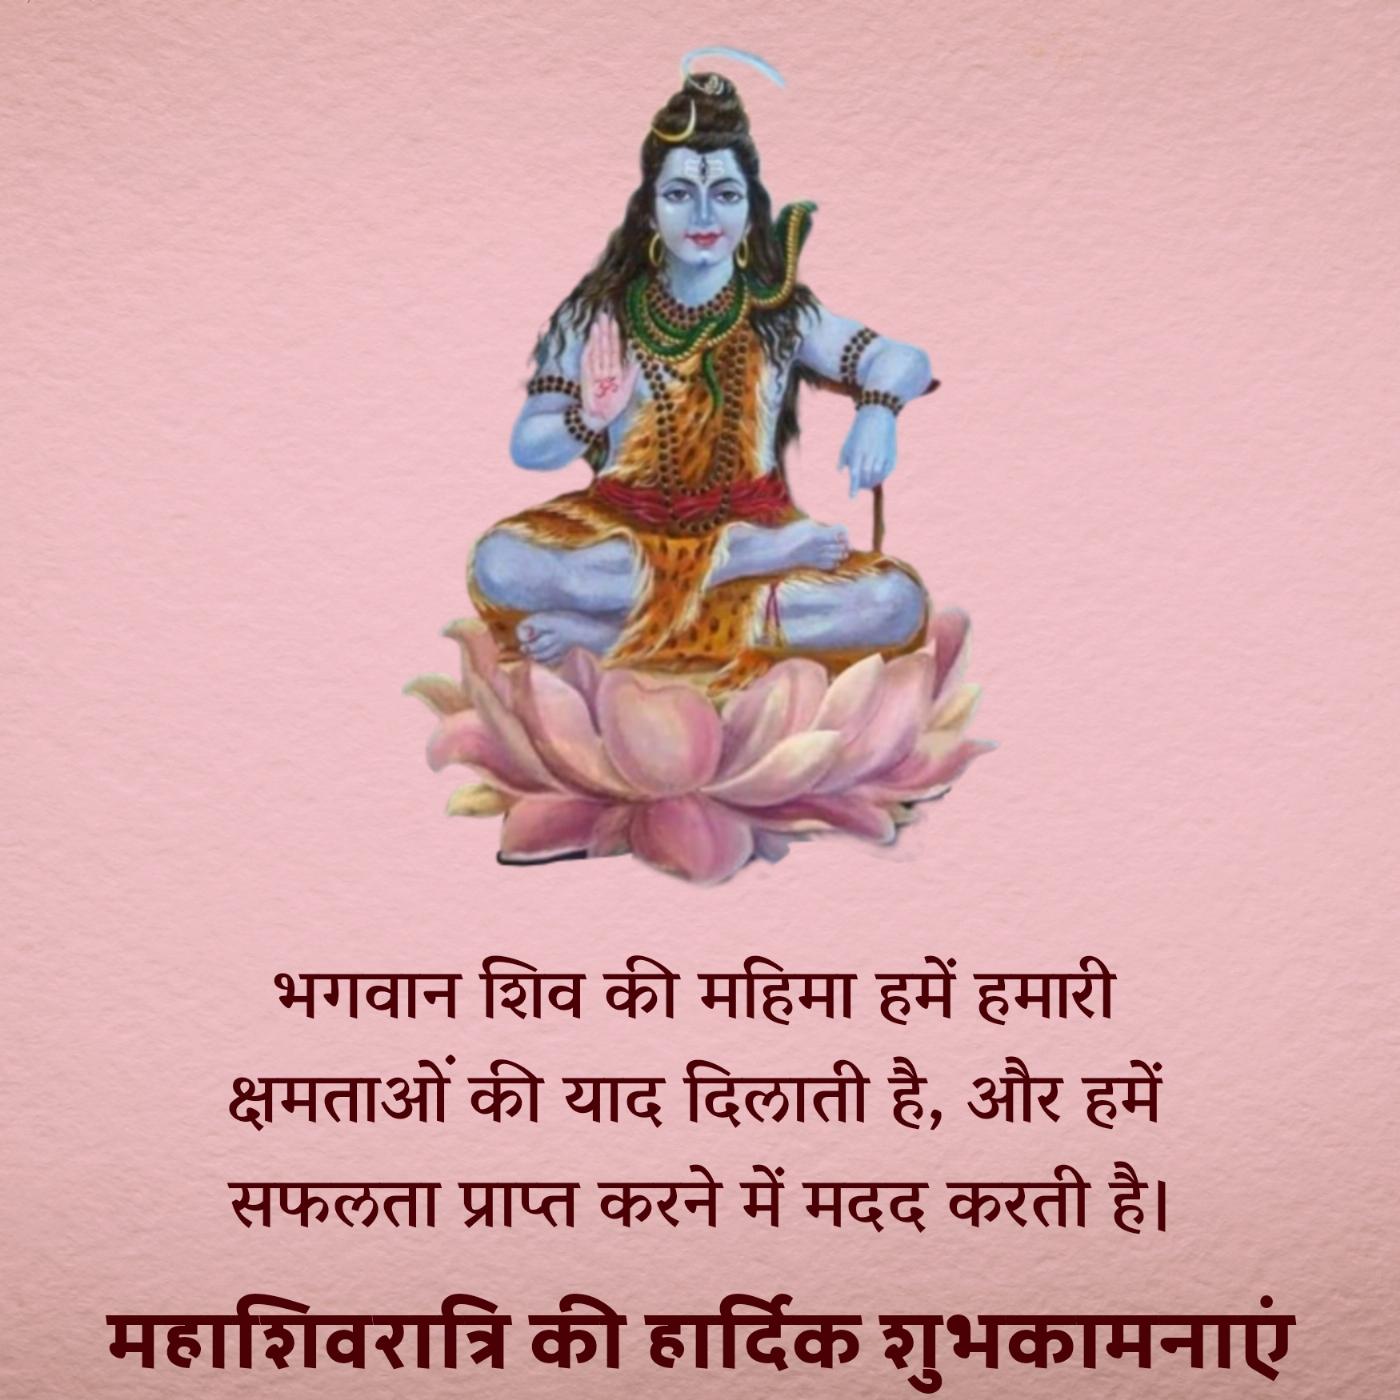 भगवान शिव की महिमा हमें हमारी क्षमताओं की याद दिलाती है